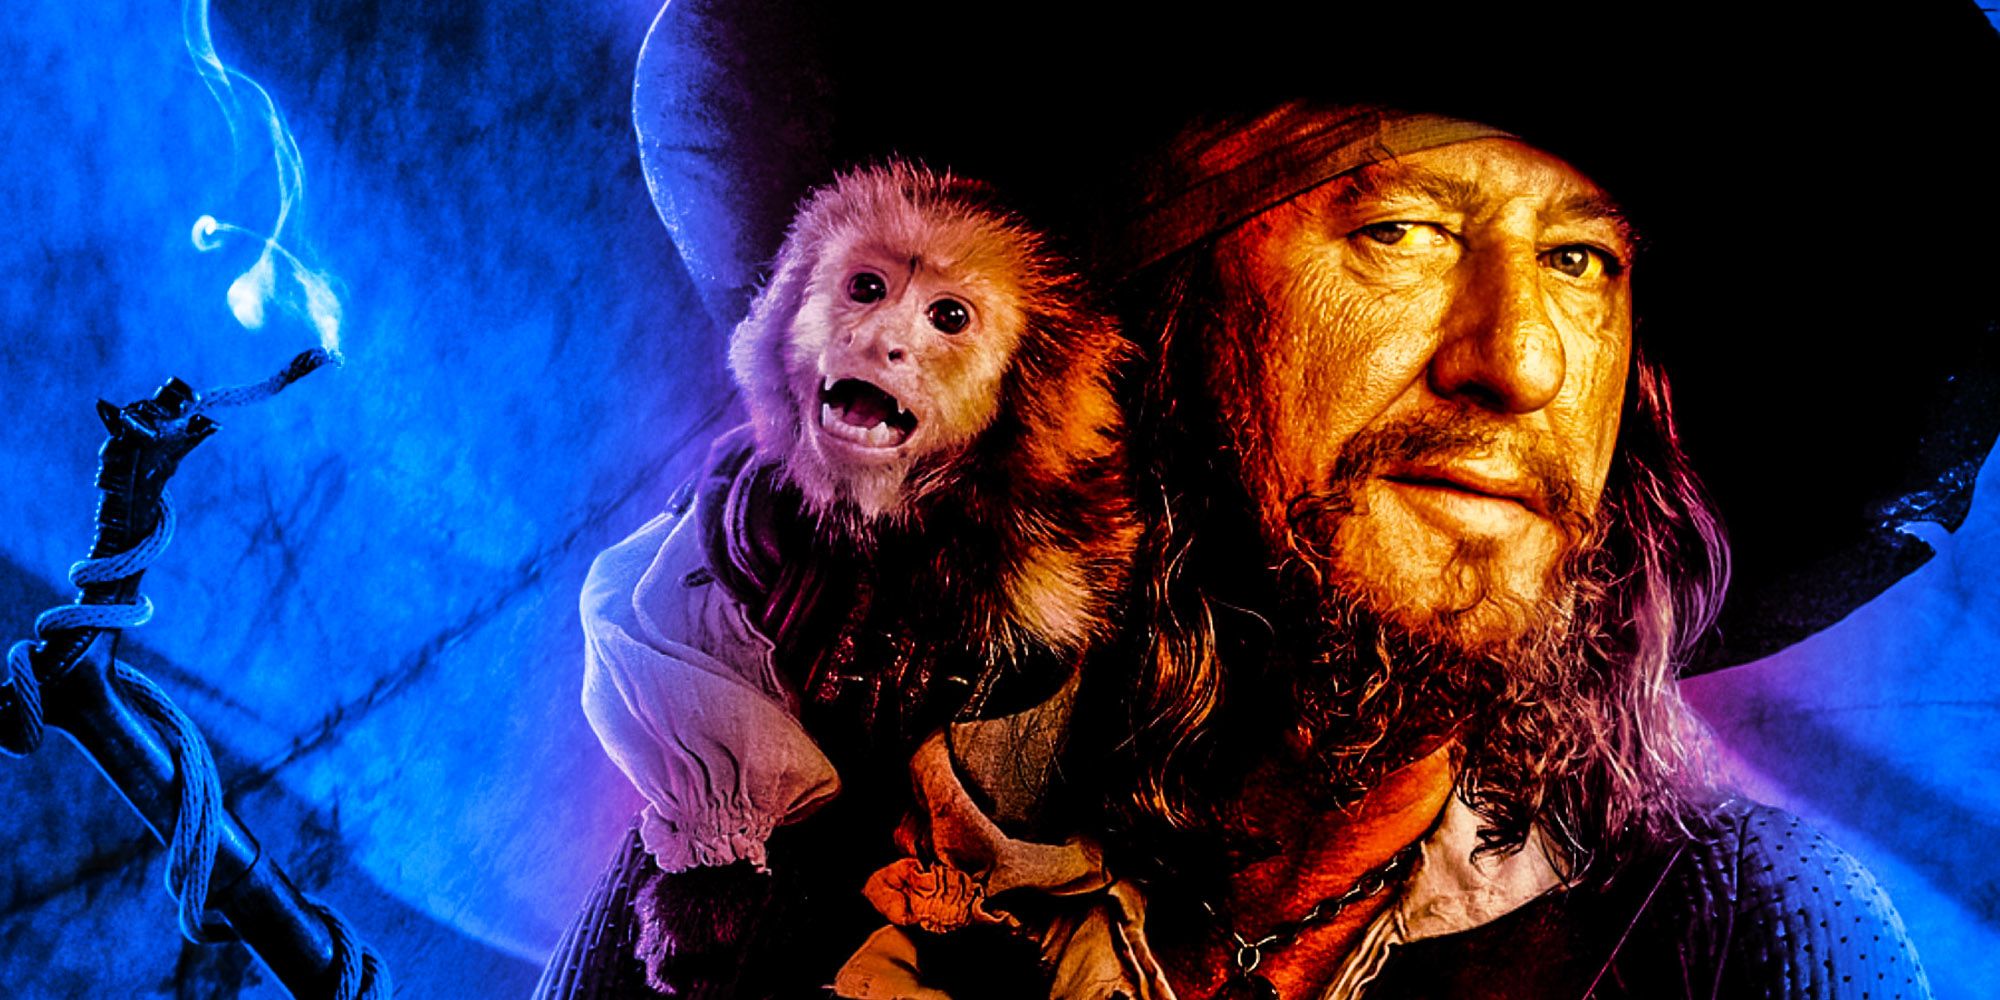 Kapitän Barbossa von Fluch der Karibik mit seinem Affen vor einem Schiffsmast